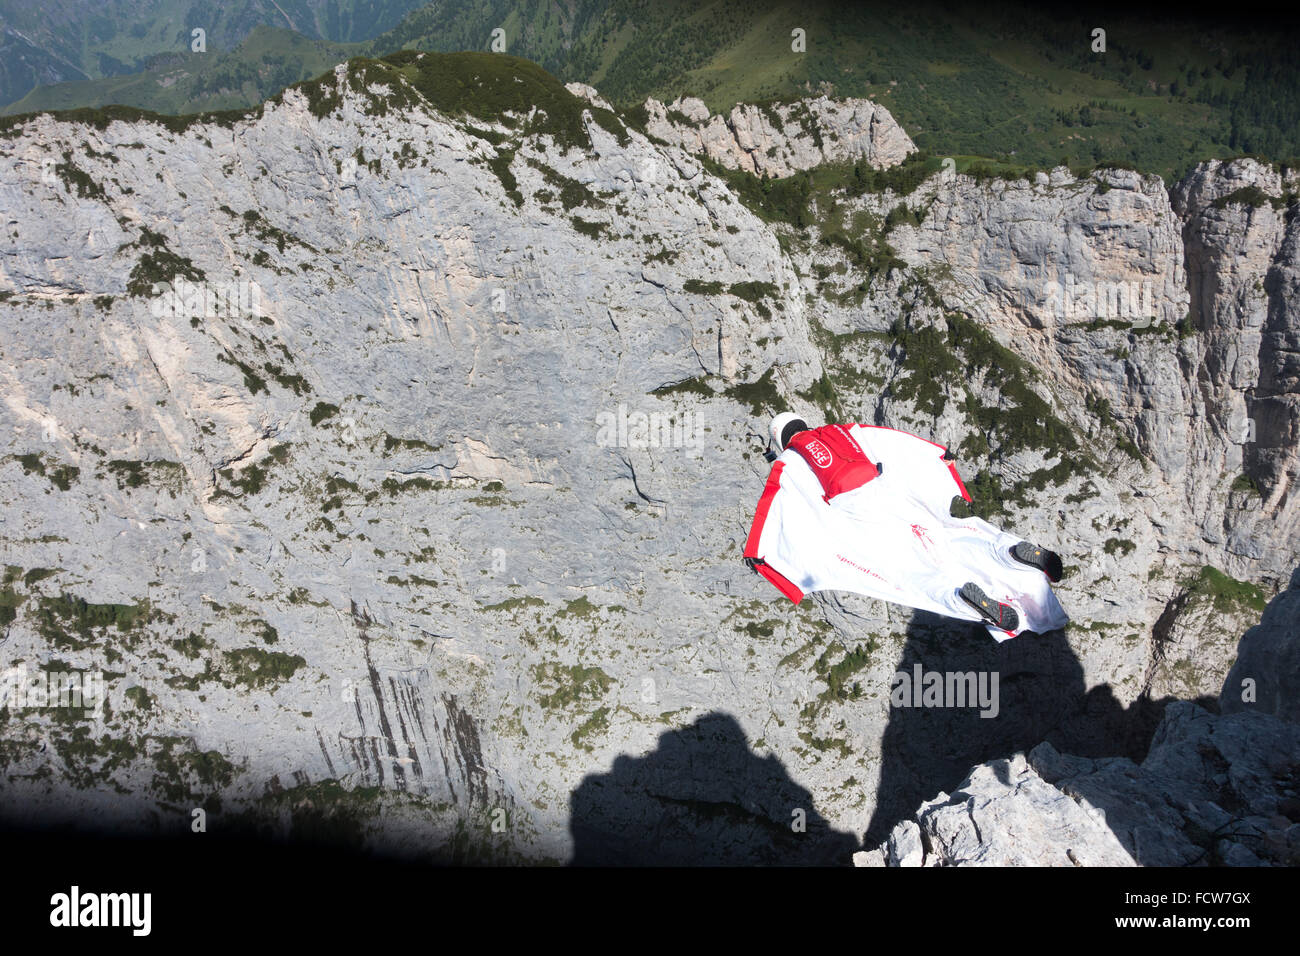 Crazy Base Jumper fliegen innerhalb seiner Wingsuit entlang einer Felswand. Dabei hat er die hochfliegenden mit 100 km/h vorwärts und hat einen grossen Ansturm. Stockfoto